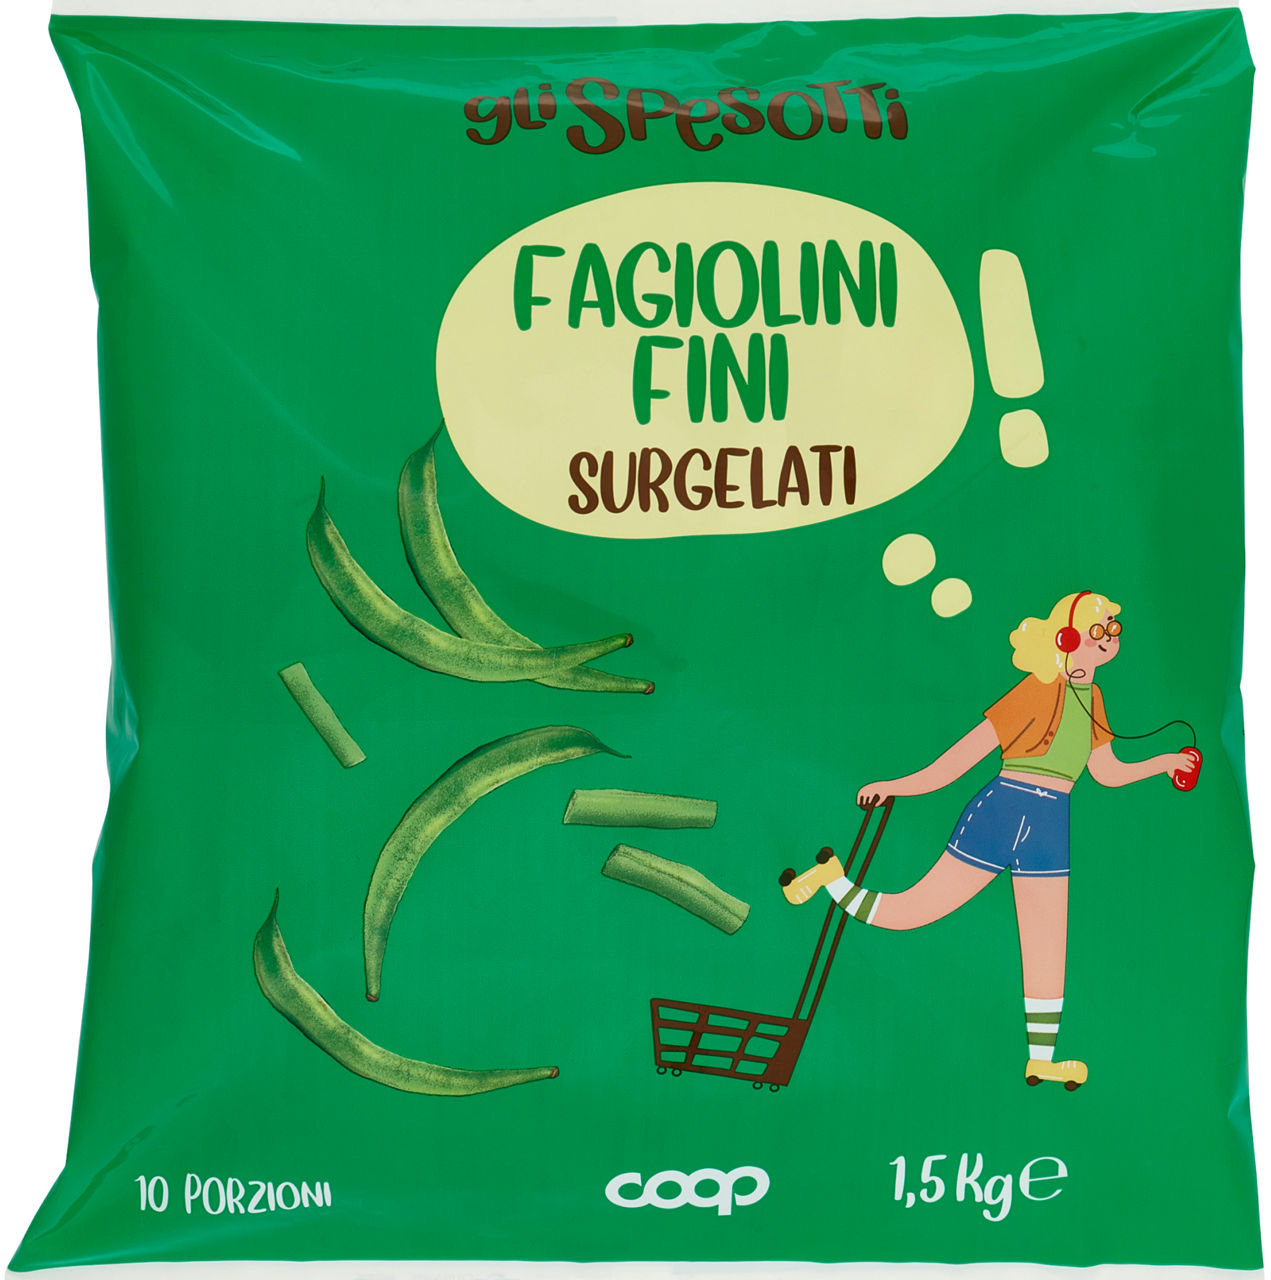 Fagiolini fini surgelati gli spesotti coop kg 1,5